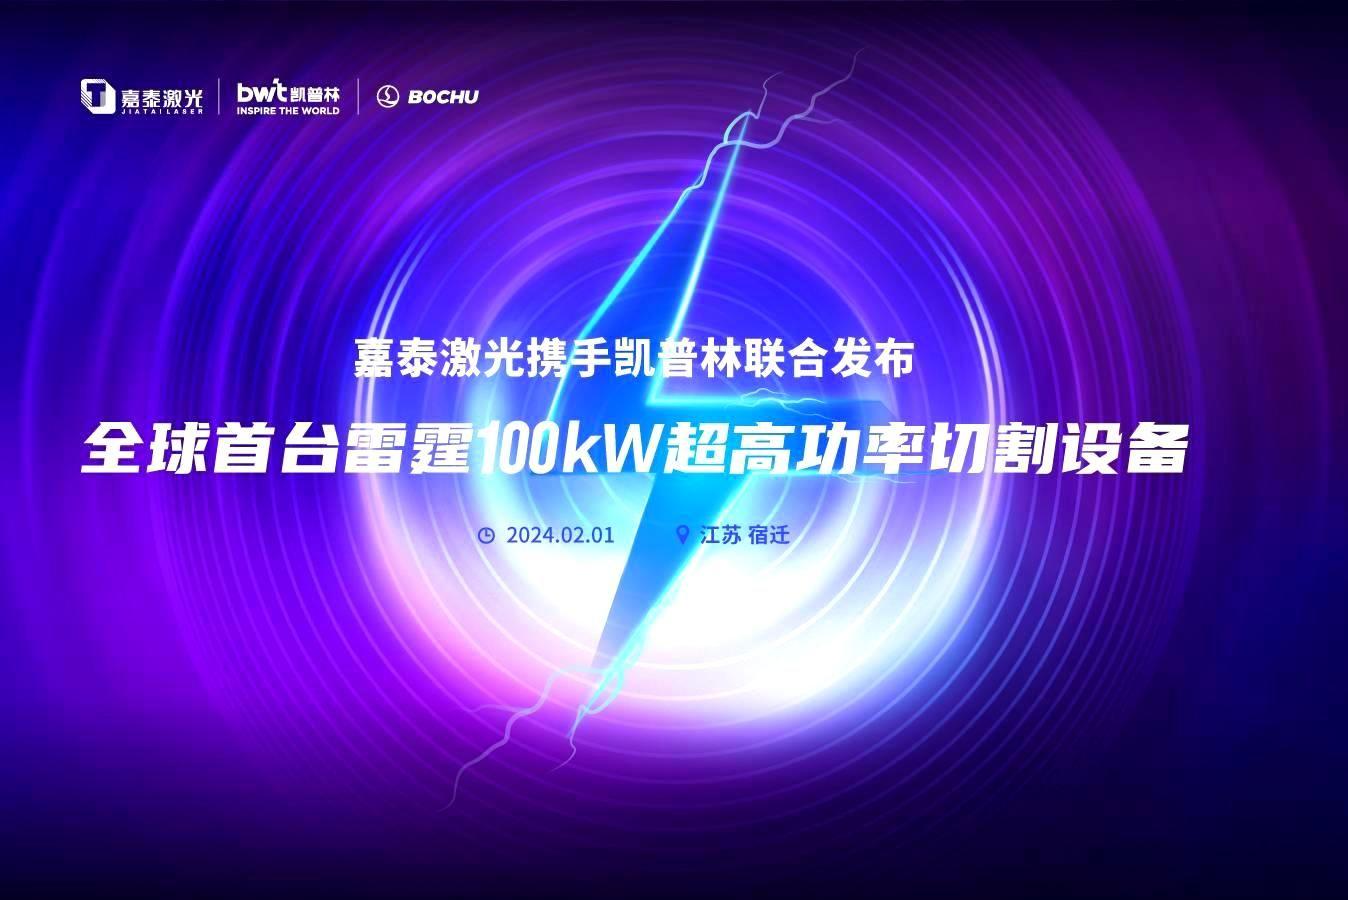 JDB电子激光携手凯普林、柏楚电子发布全球首台100kw激光切割机